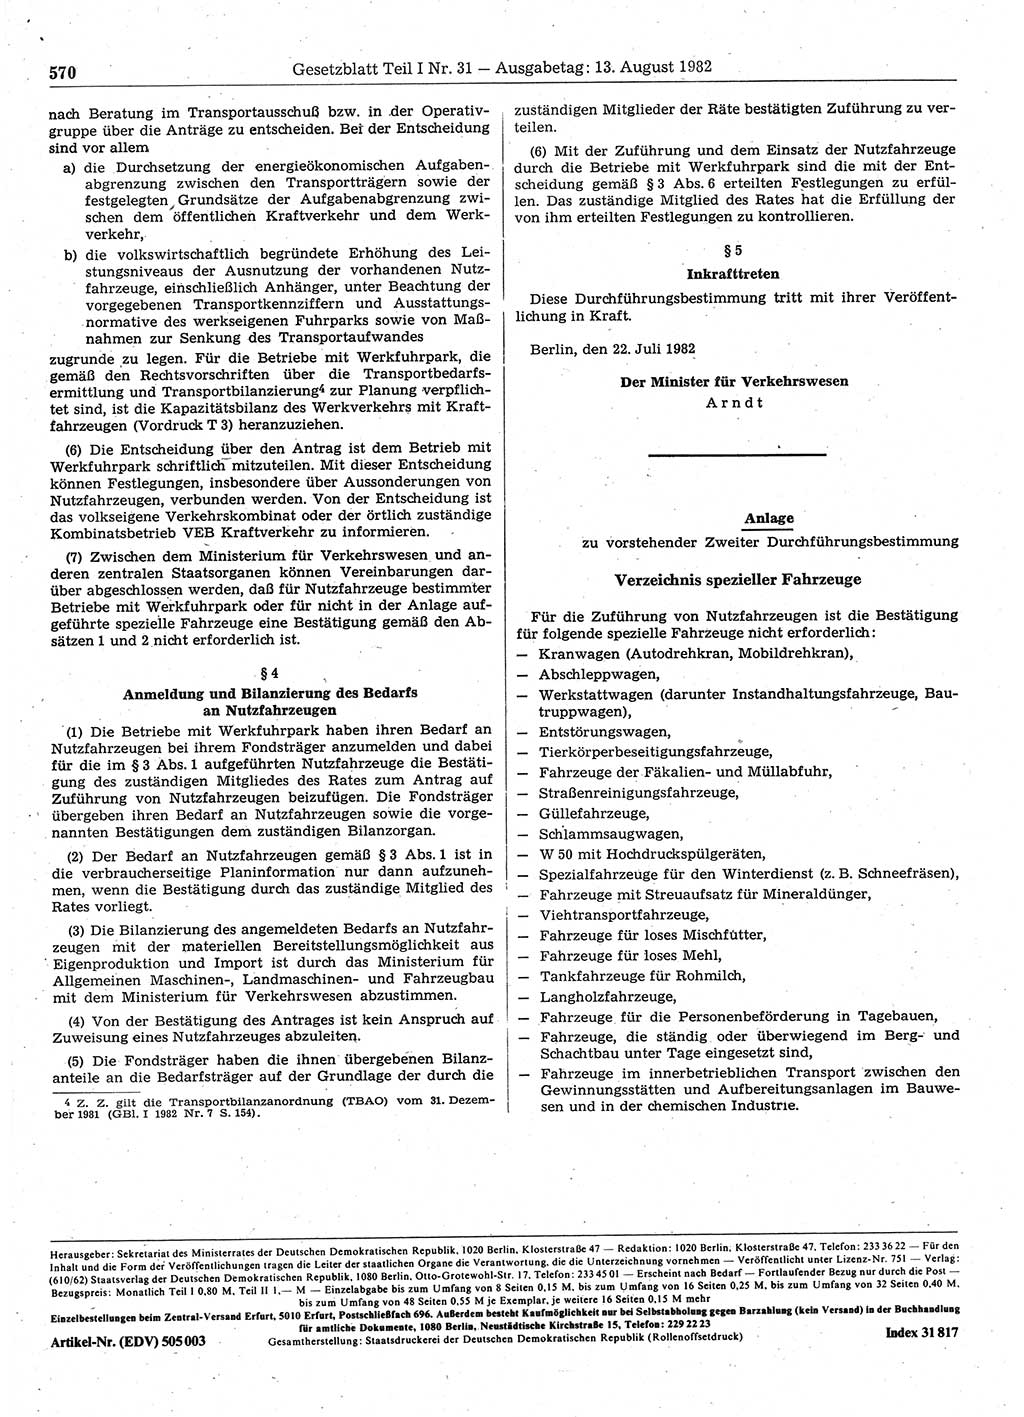 Gesetzblatt (GBl.) der Deutschen Demokratischen Republik (DDR) Teil Ⅰ 1982, Seite 570 (GBl. DDR Ⅰ 1982, S. 570)